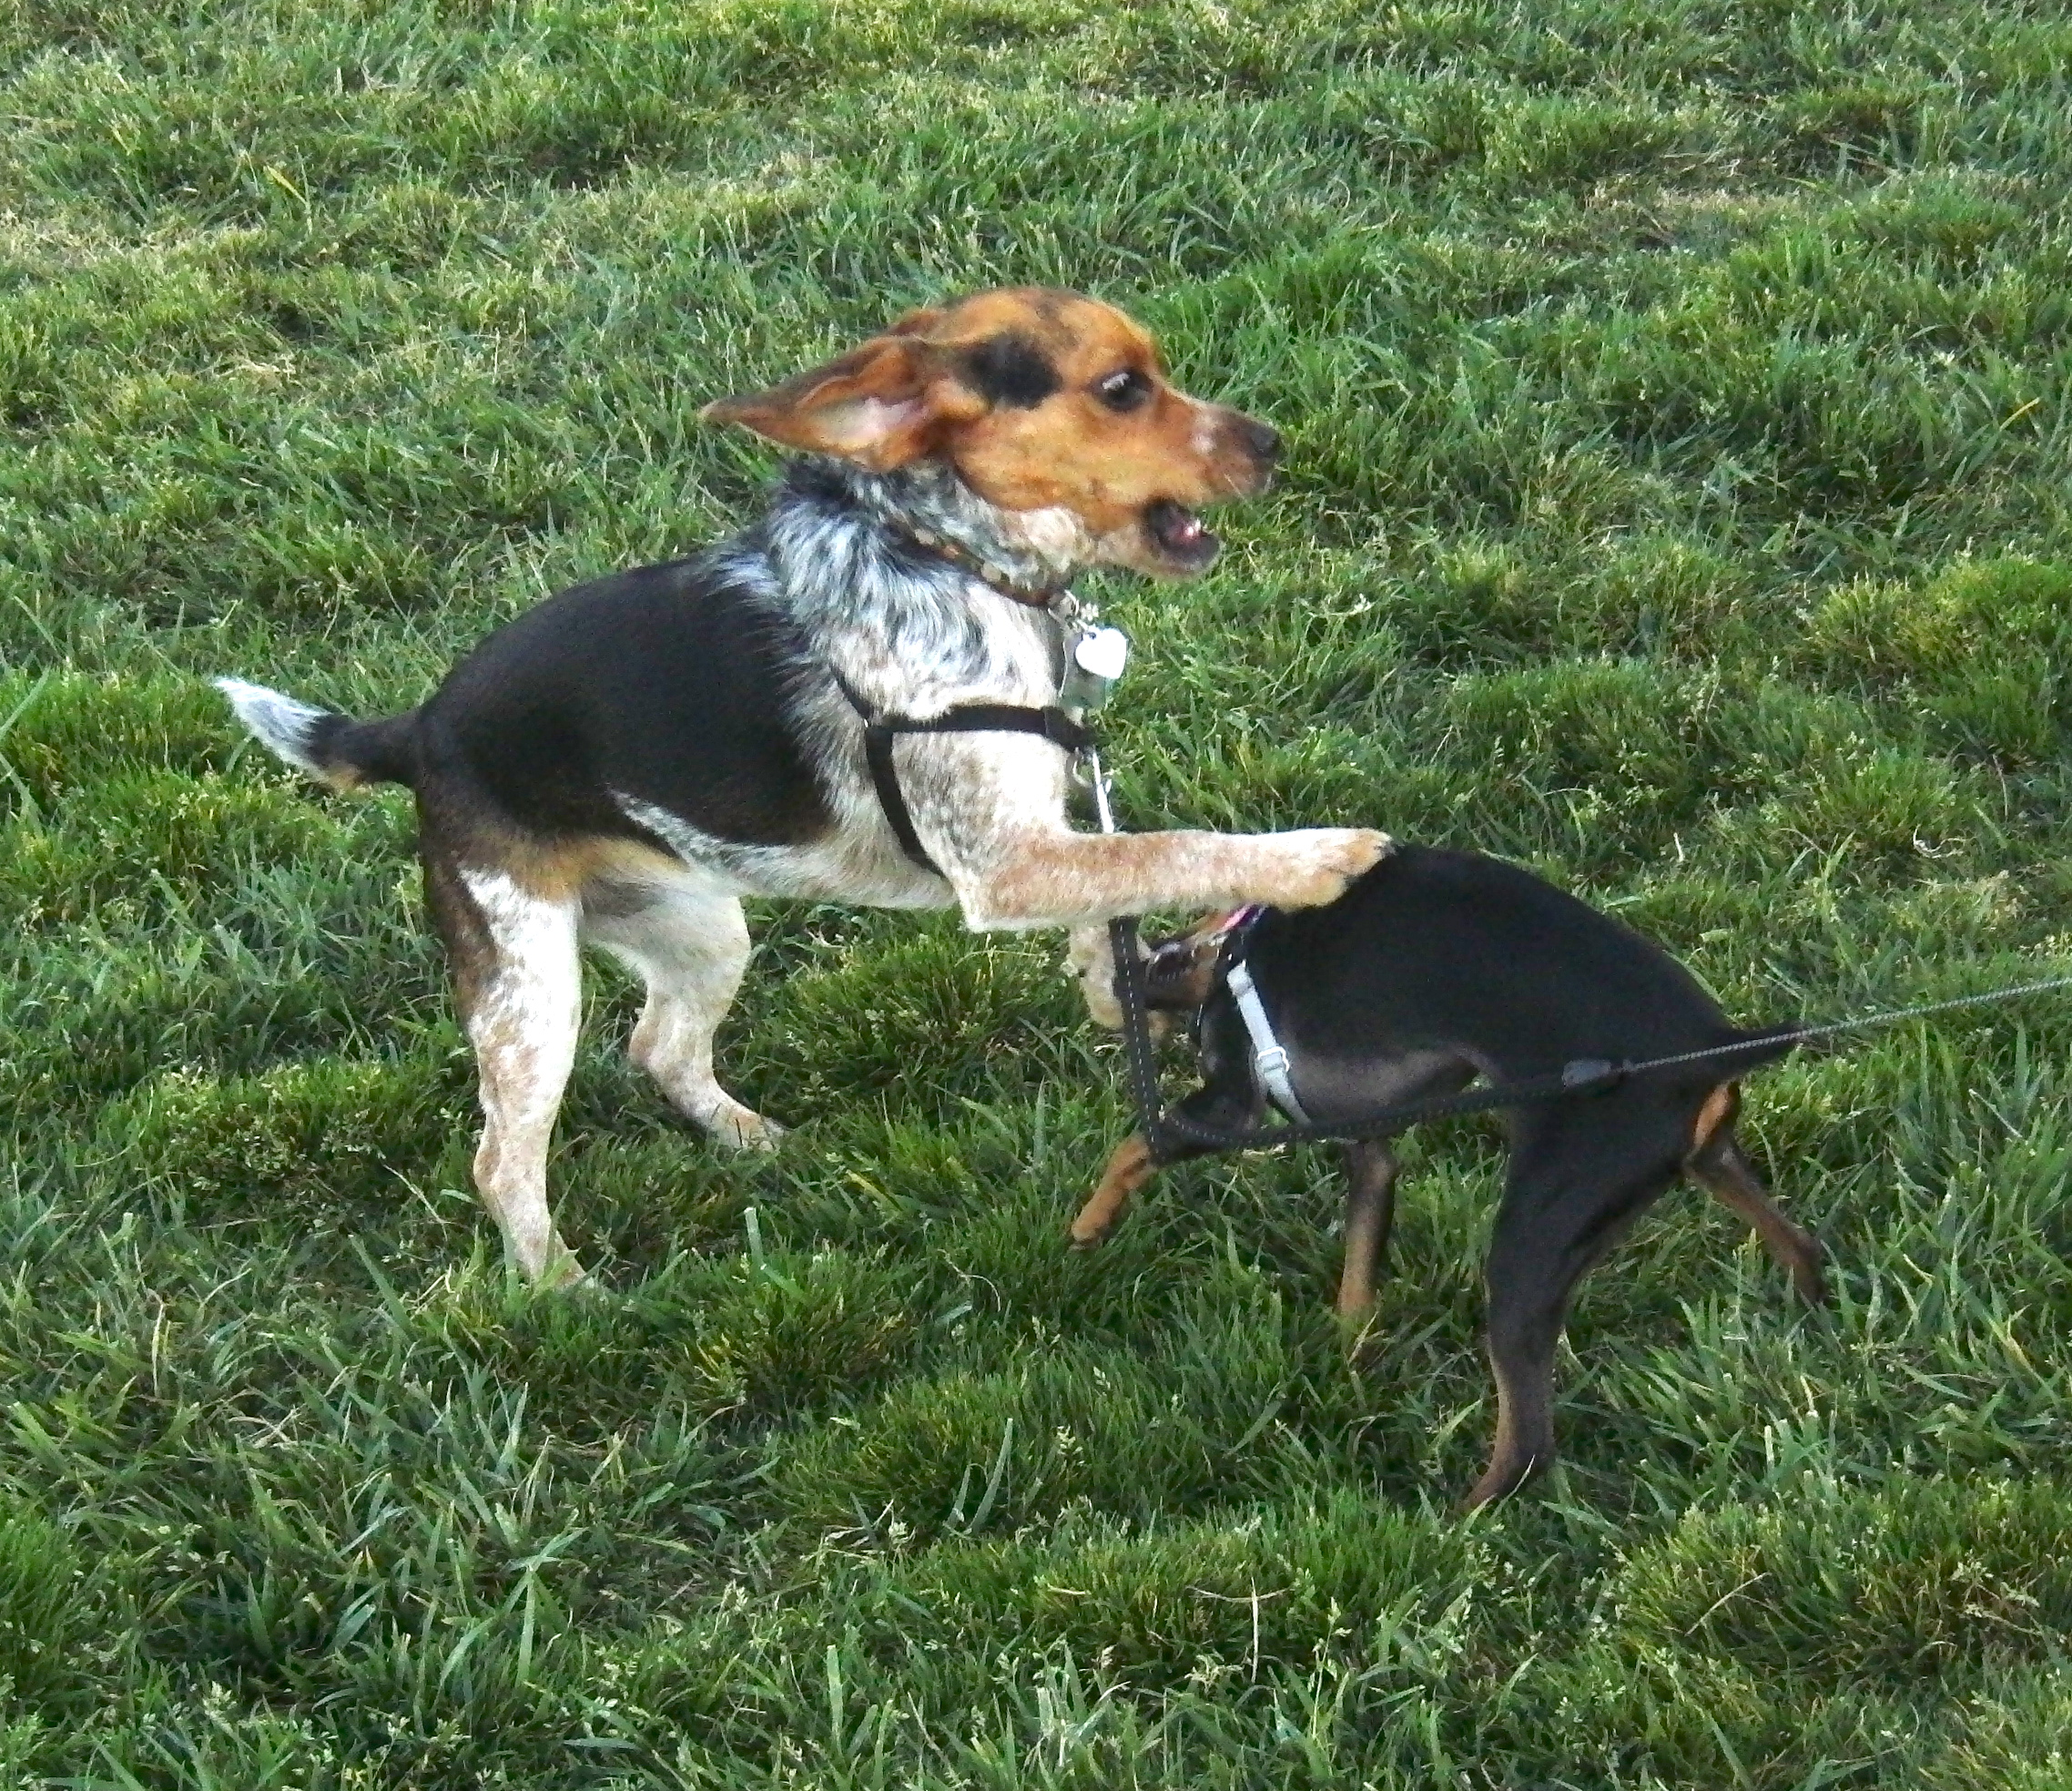 Miniature Pinscher (Min-Pin) and Bluetick Beagle